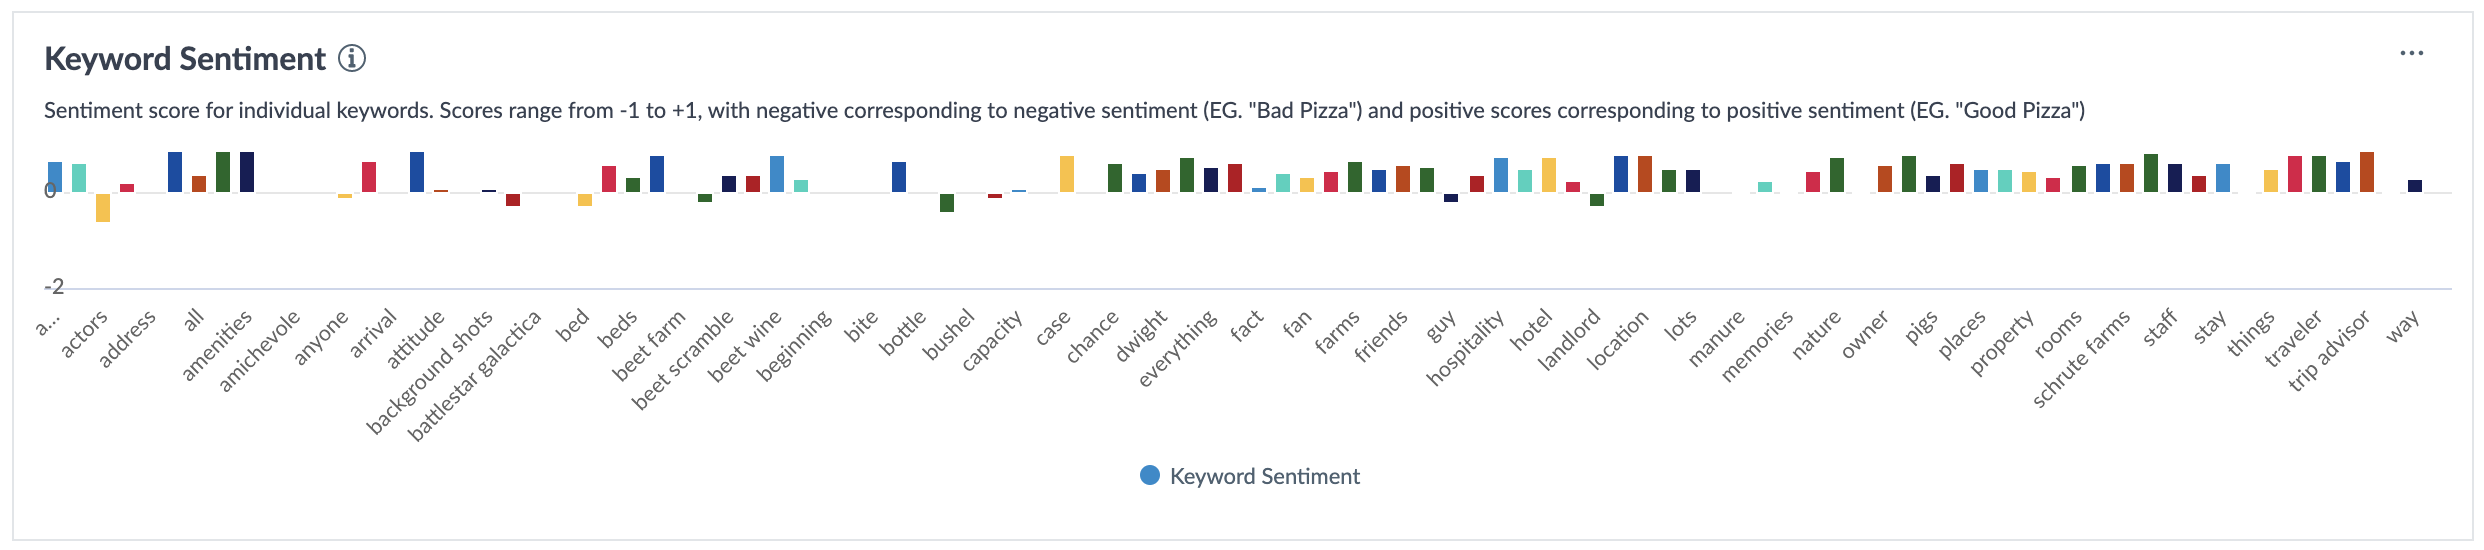 Summary metric - keyword sentiment